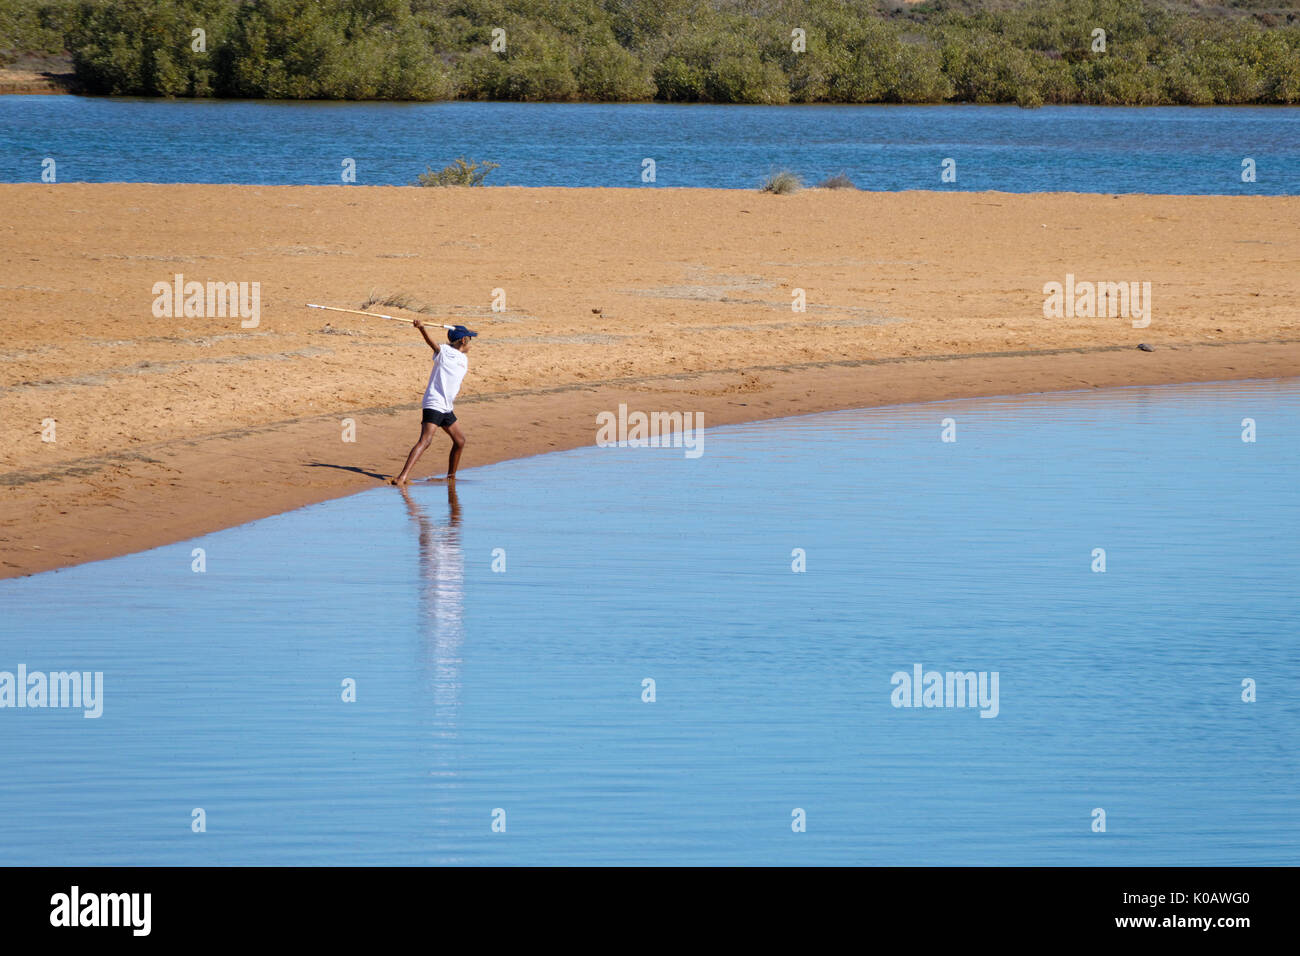 Giovane uomo aborigeno gettando lancia in acqua, il tentativo di catturare i pesci, Carnarvon, Gascoyne, Australia occidentale Foto Stock